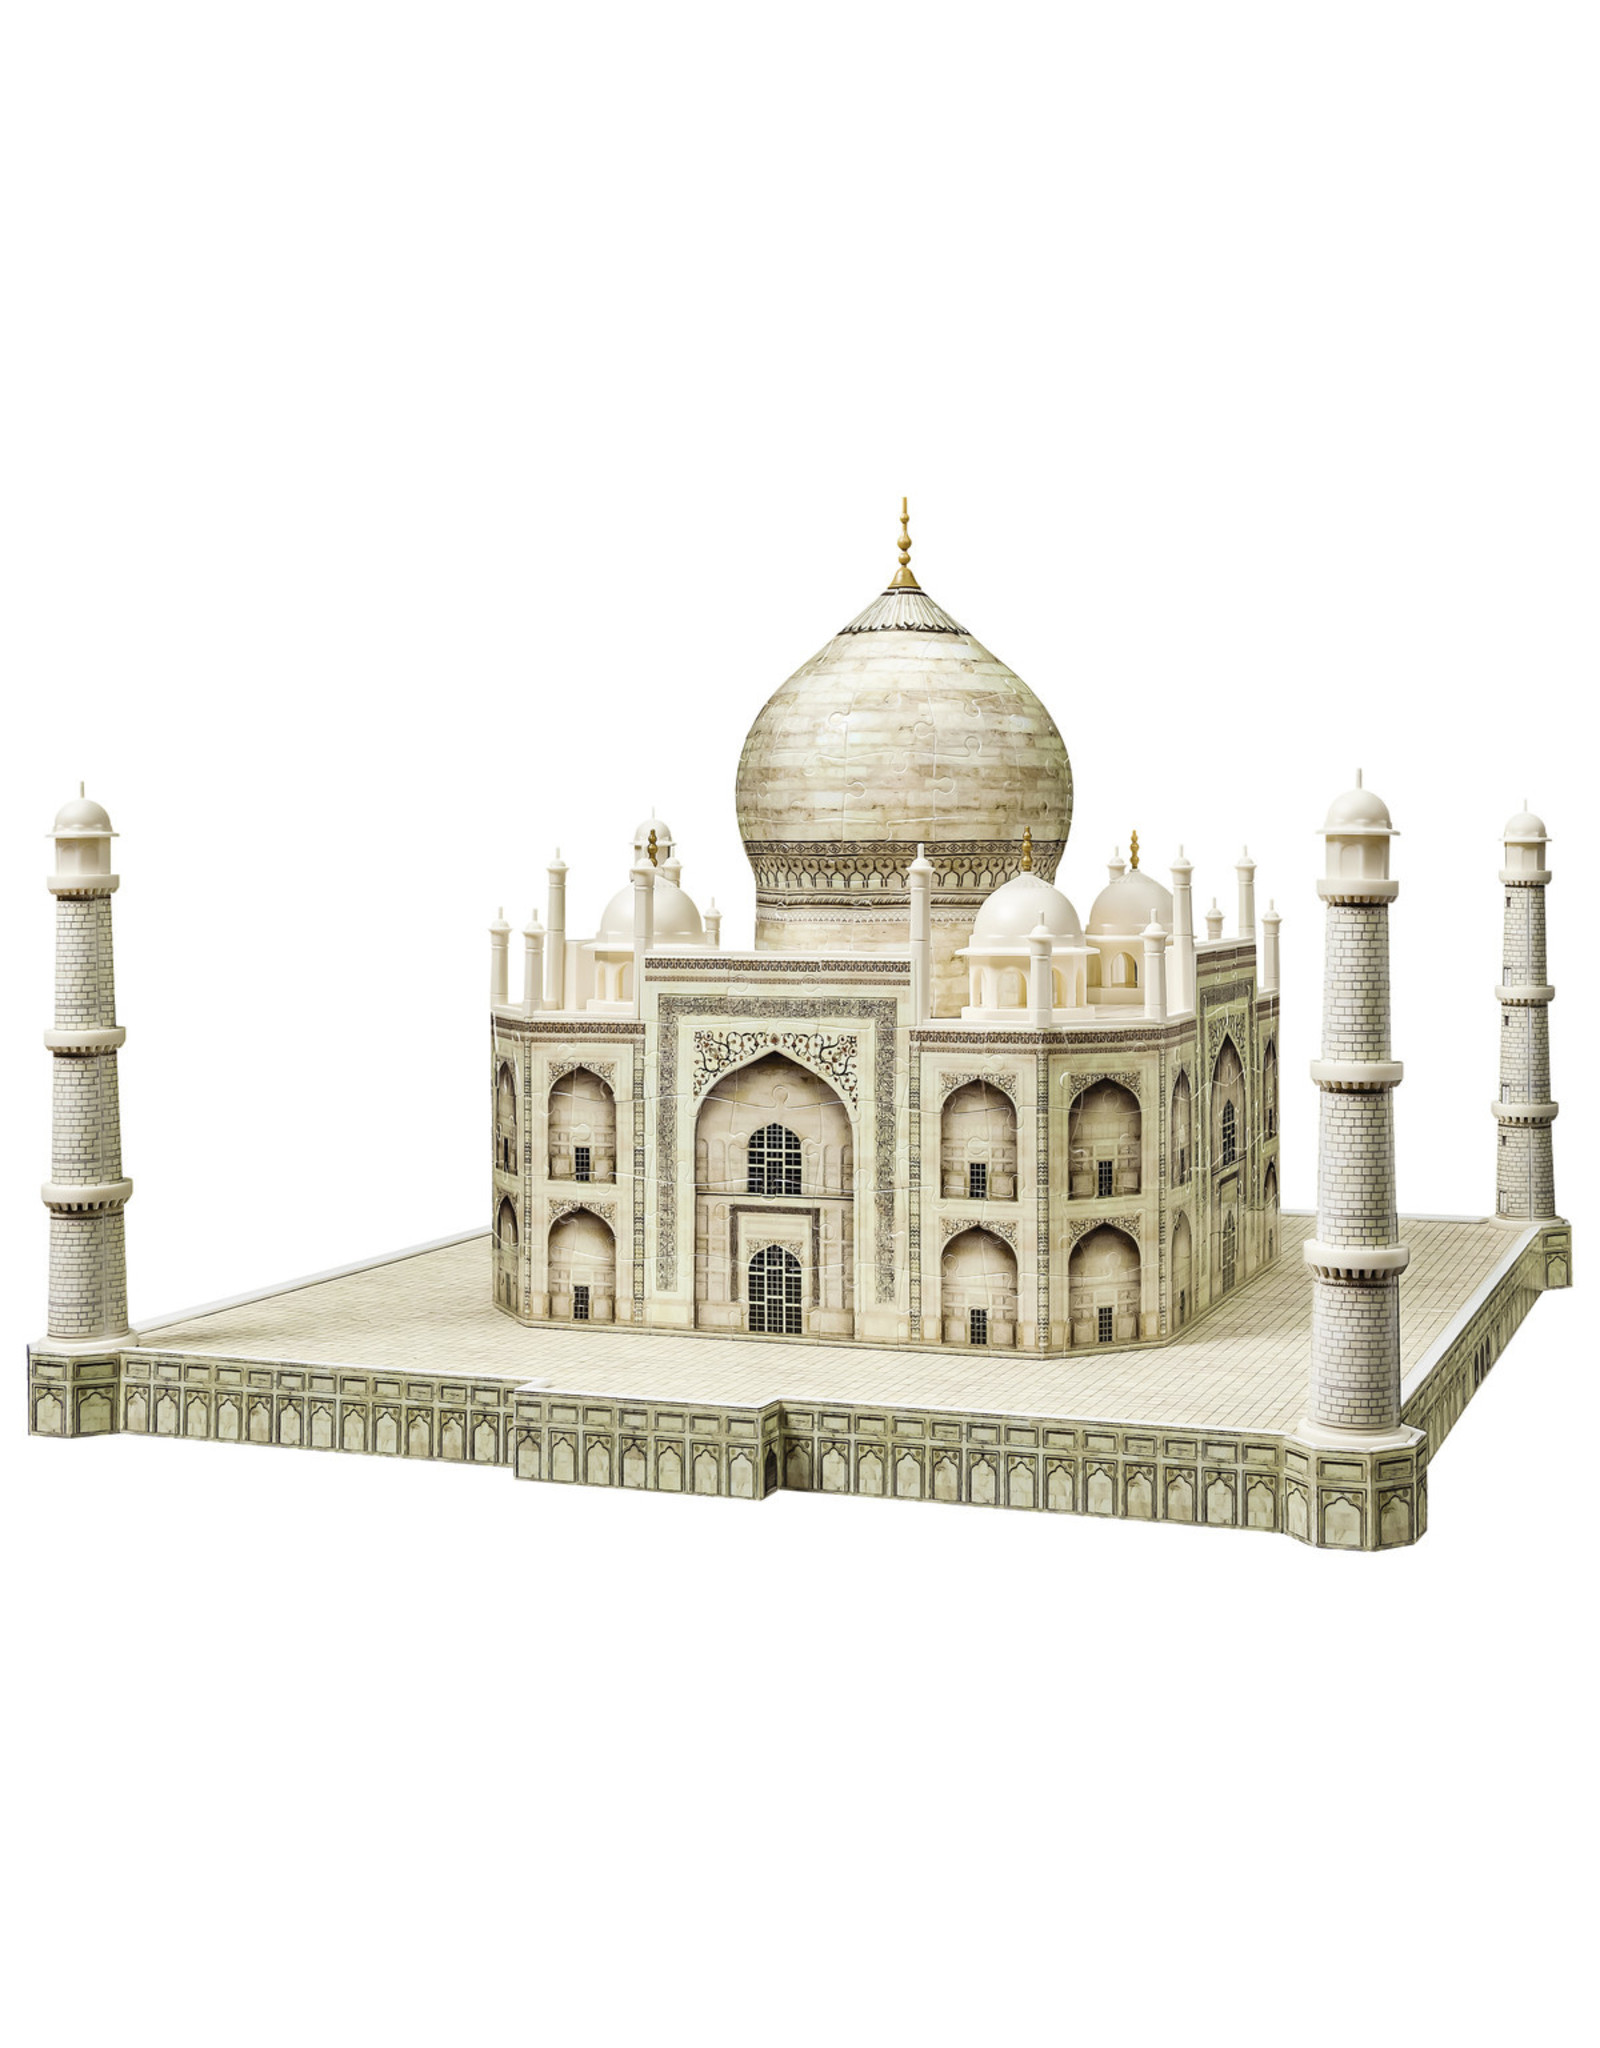 Ravensburger Ravensburger 3D Puzzel 125647 Taj Mahal - 216 Stukjes